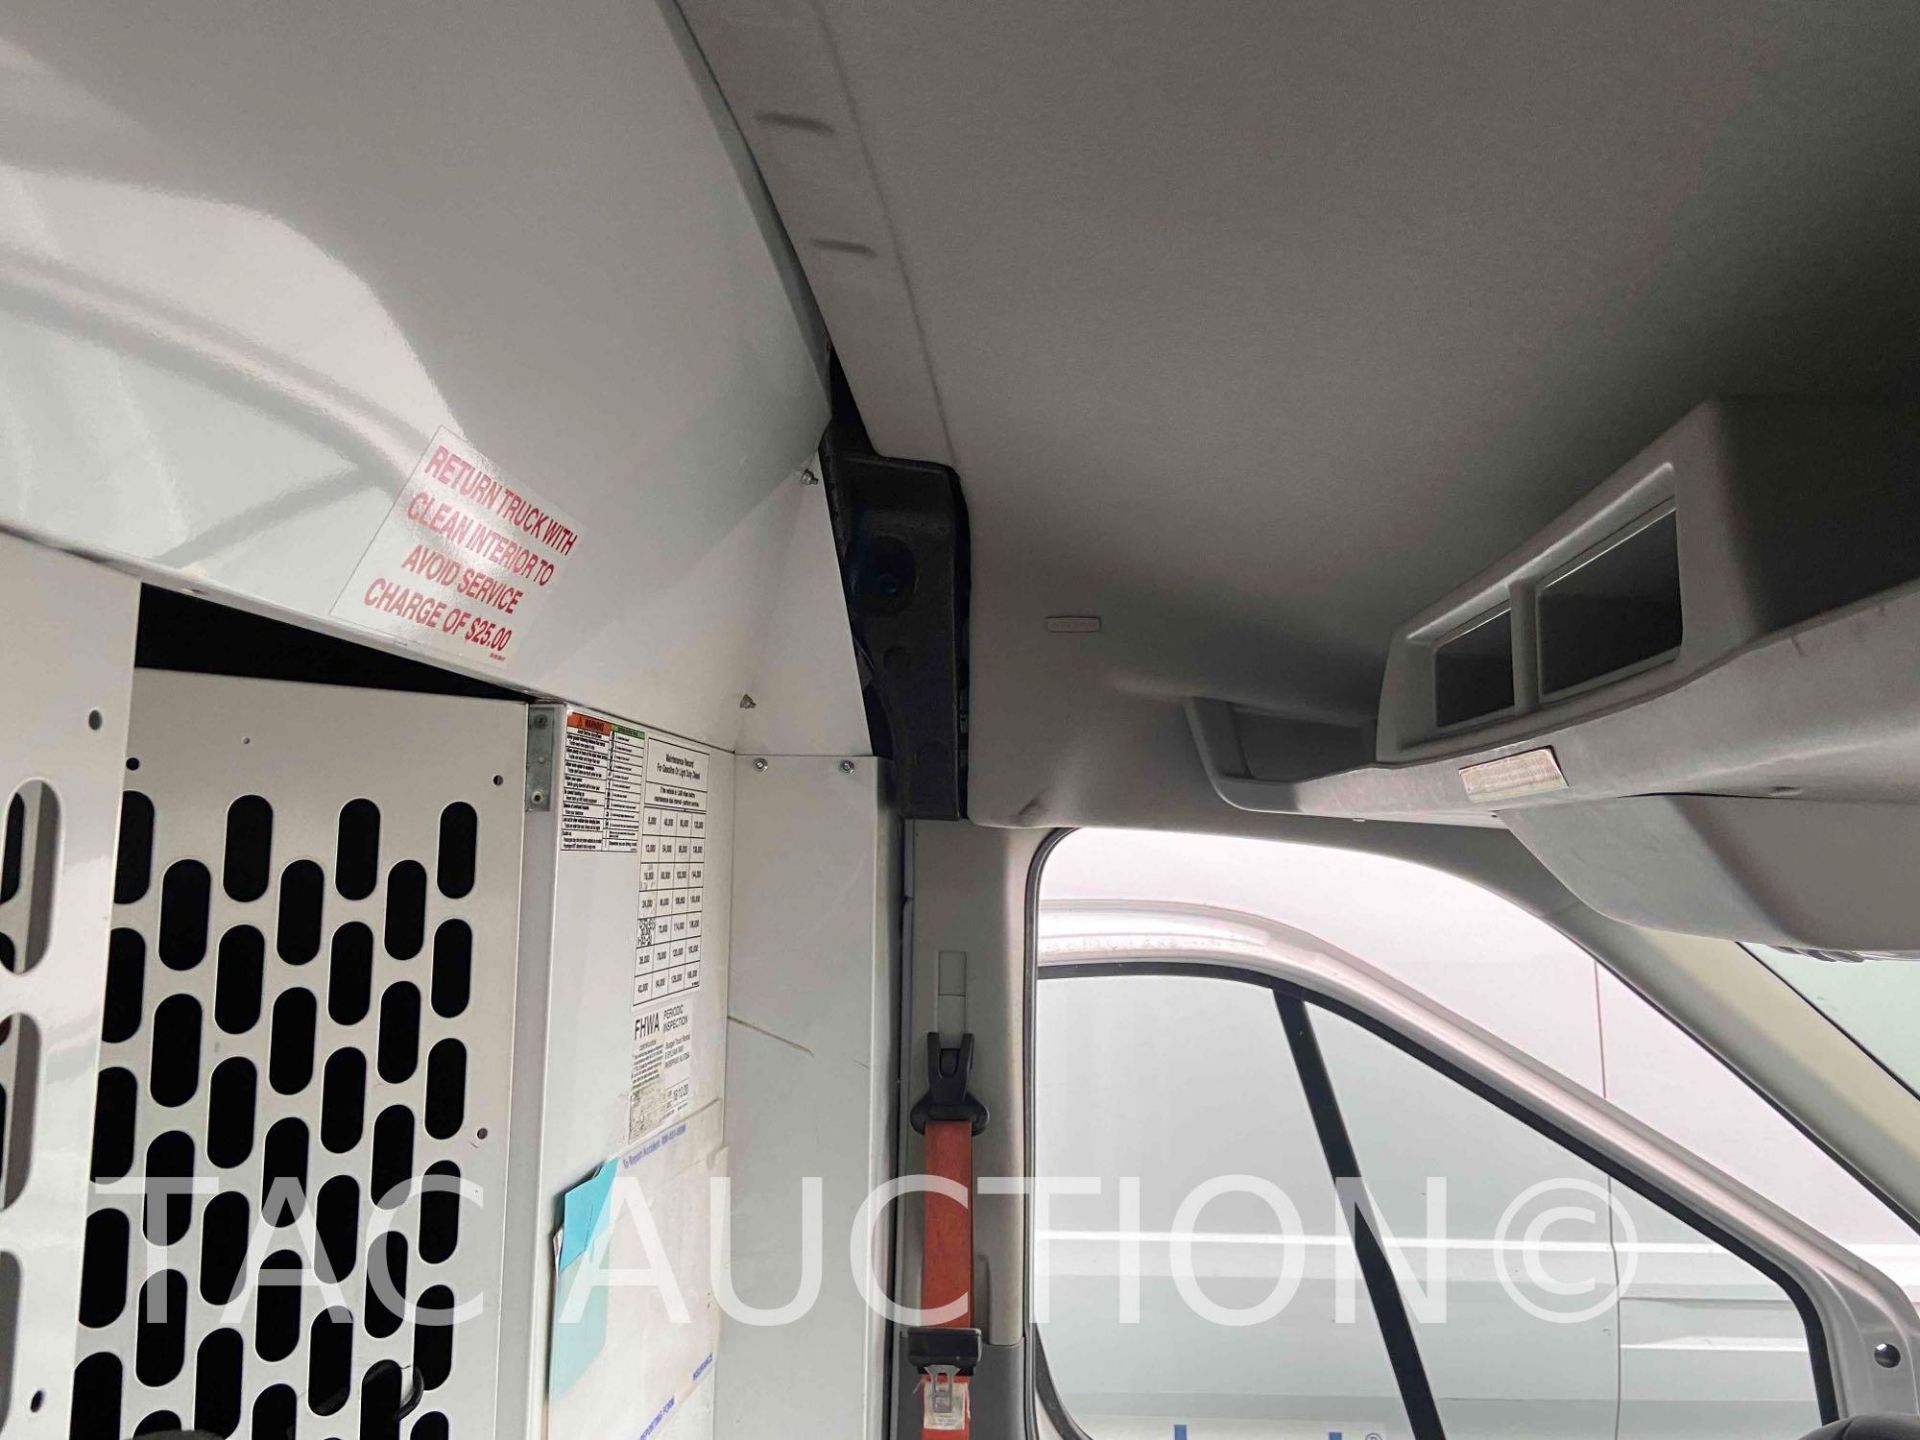 2019 Ford Transit 150 Cargo Van - Image 50 of 76